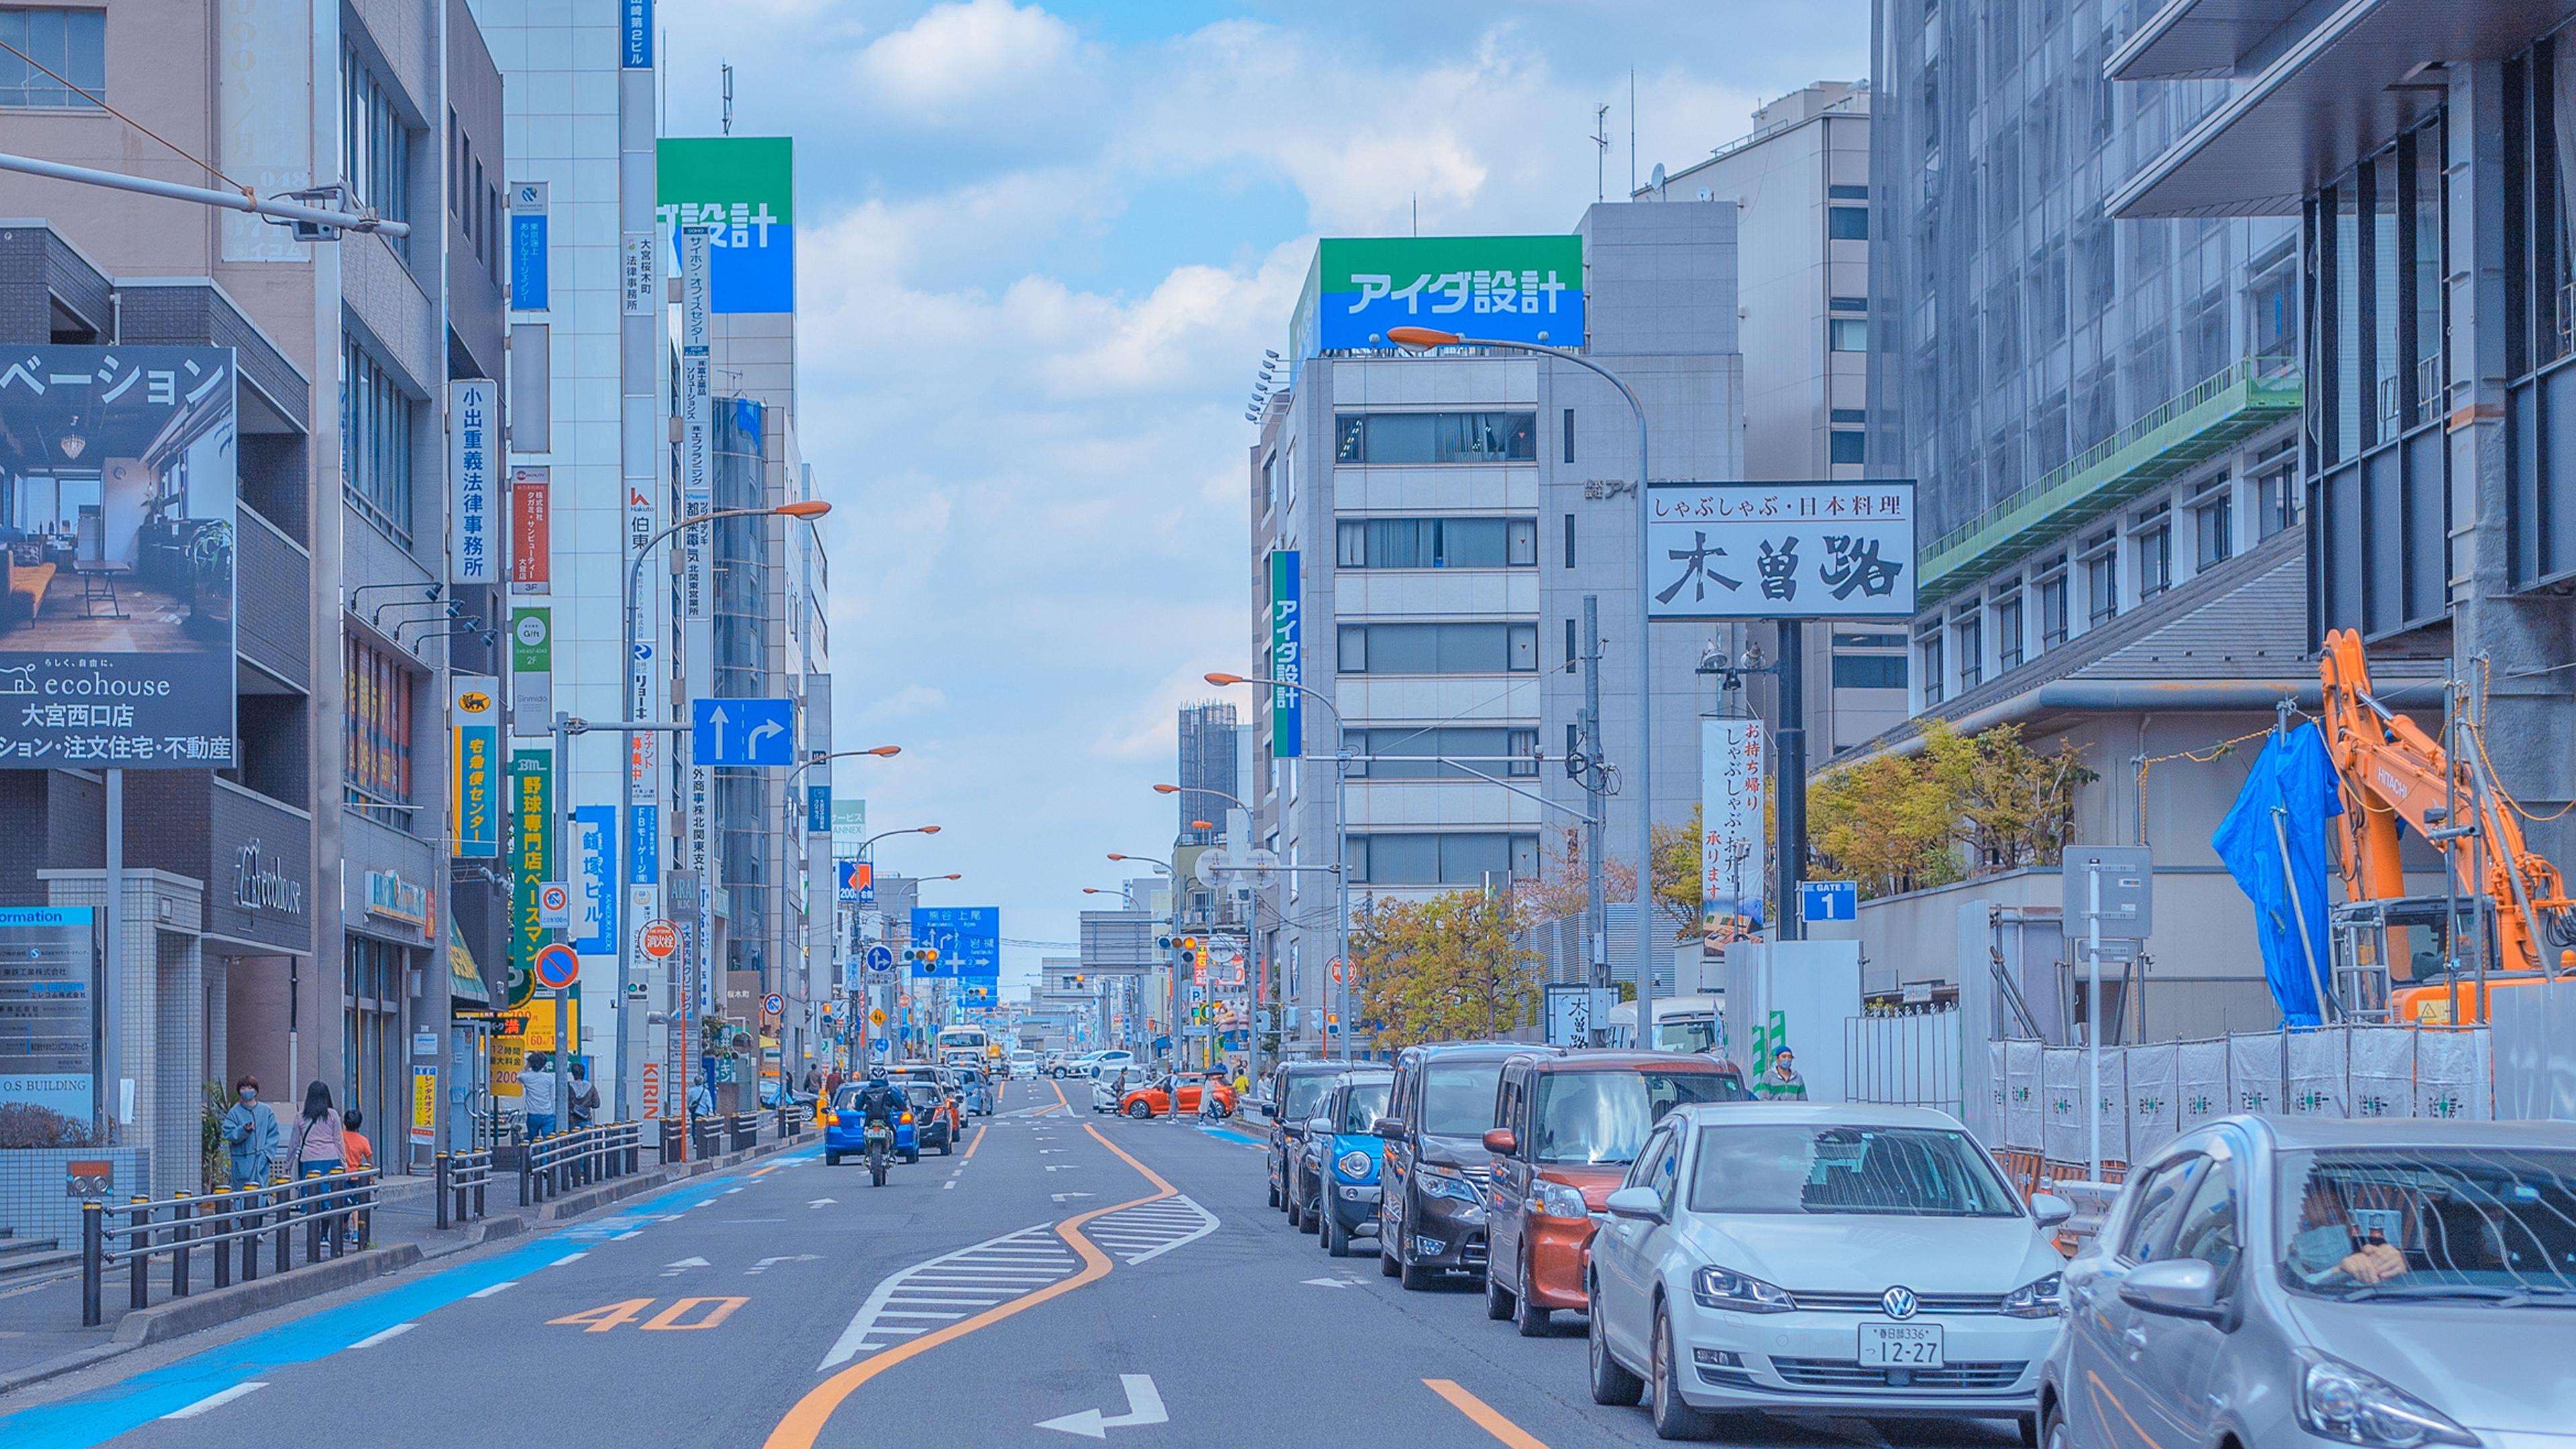 【美图分享93】日系治愈清新街景~~如动漫般的场景